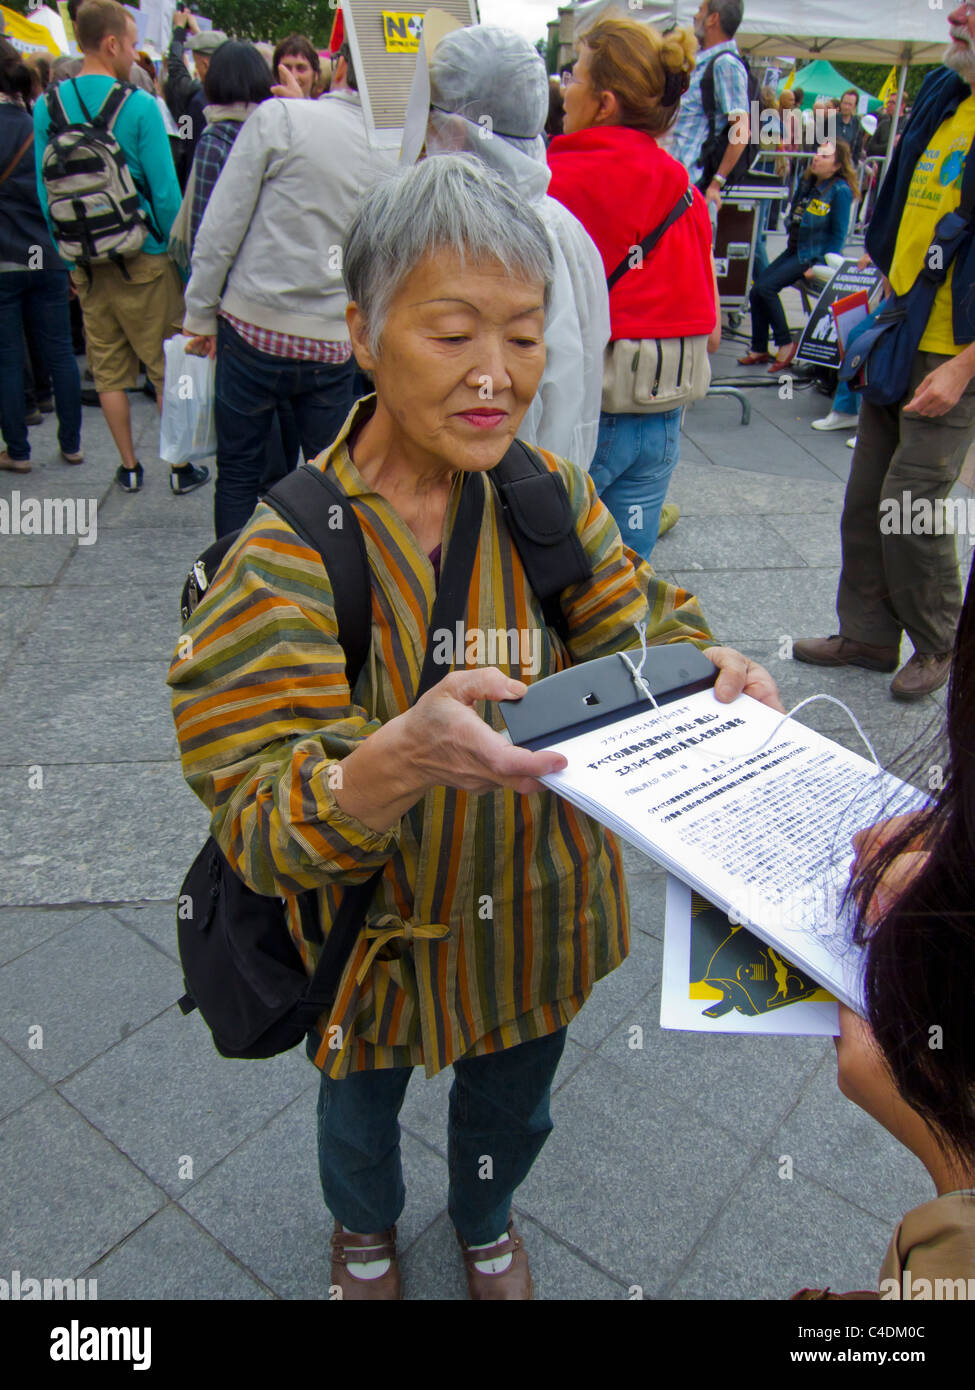 Parigi, Francia, dimostrazione francese contro l'energia nucleare, donna giapponese che ottiene firme per petizione, lavoro volontario, firma di petizioni, movimento ambientale francese Foto Stock